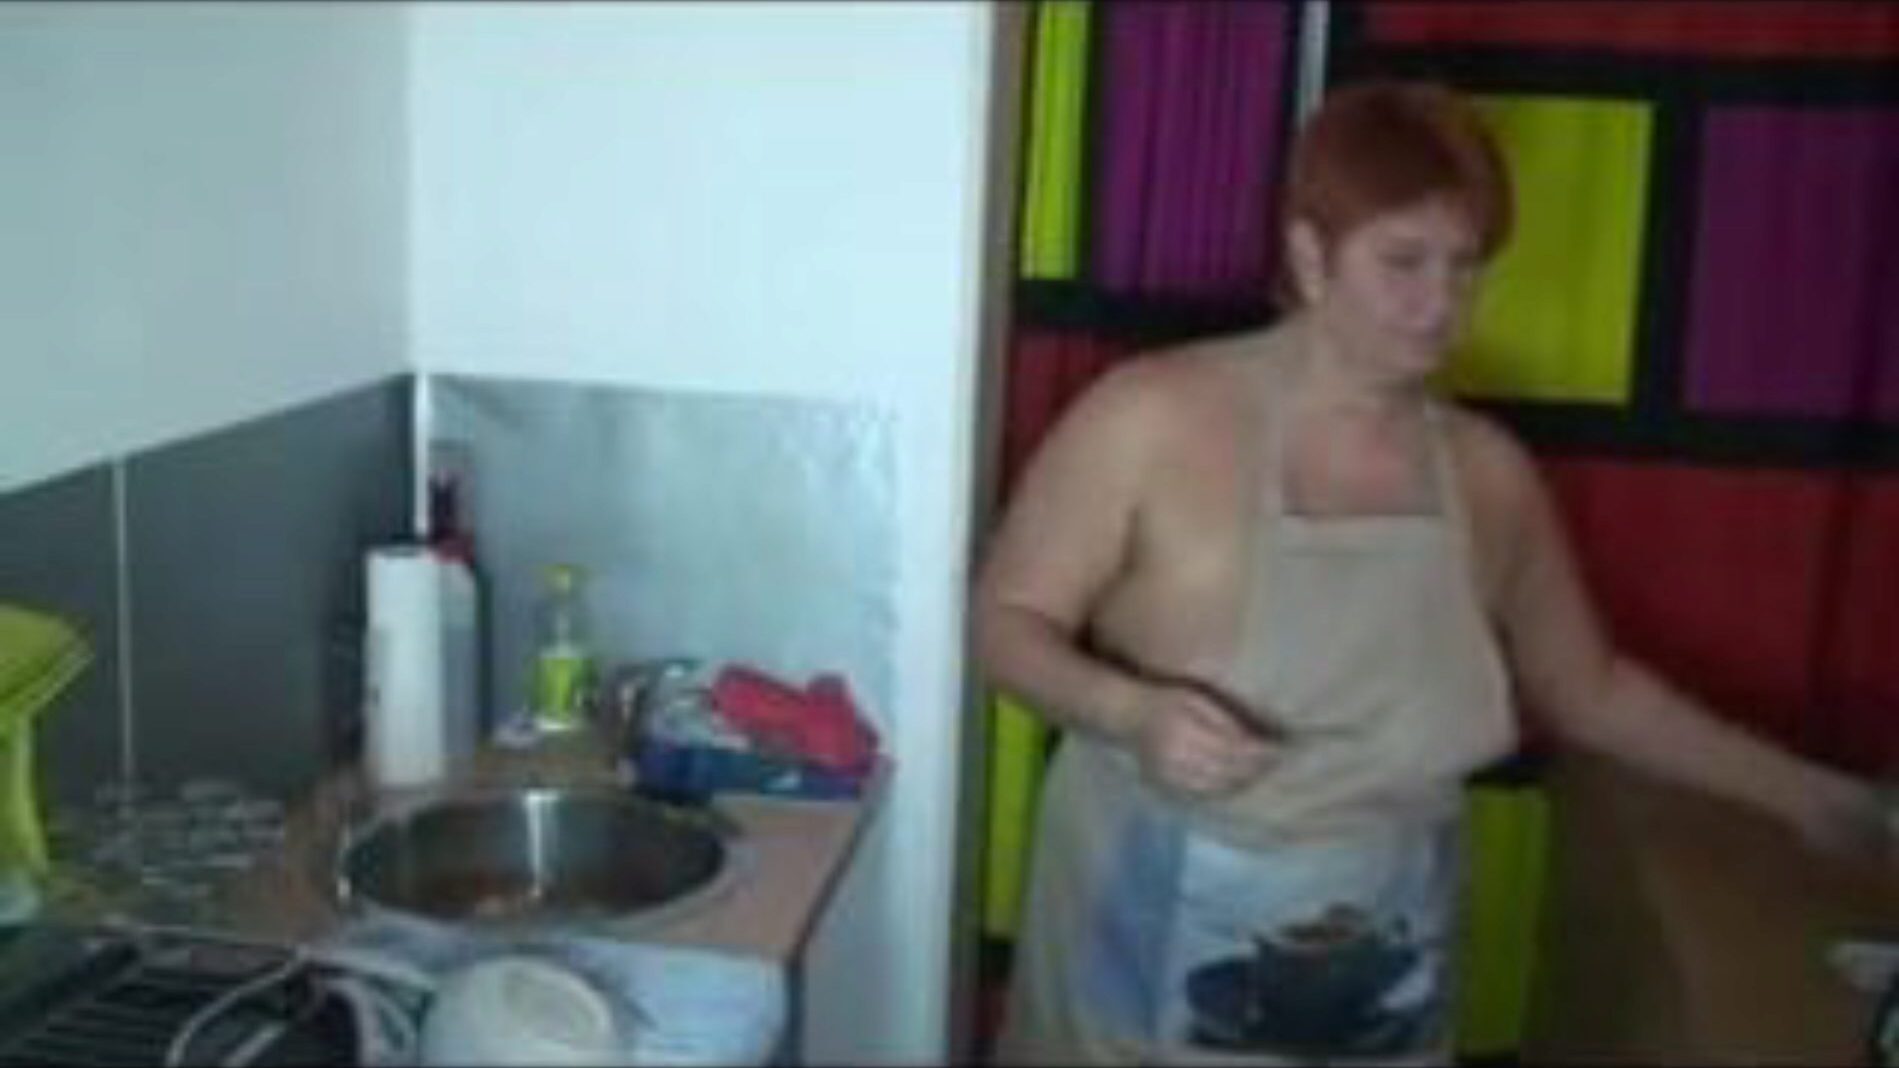 podczas zmywania naczyń w kuchni, darmowe porno 55: oglądaj xhamster podczas mycia naczyń w kuchni klip na xhamster, gigantycznej stronie z kanałami erotycznymi z mnóstwem darmowych niemieckich najgorętszych i brzmiących filmów porno